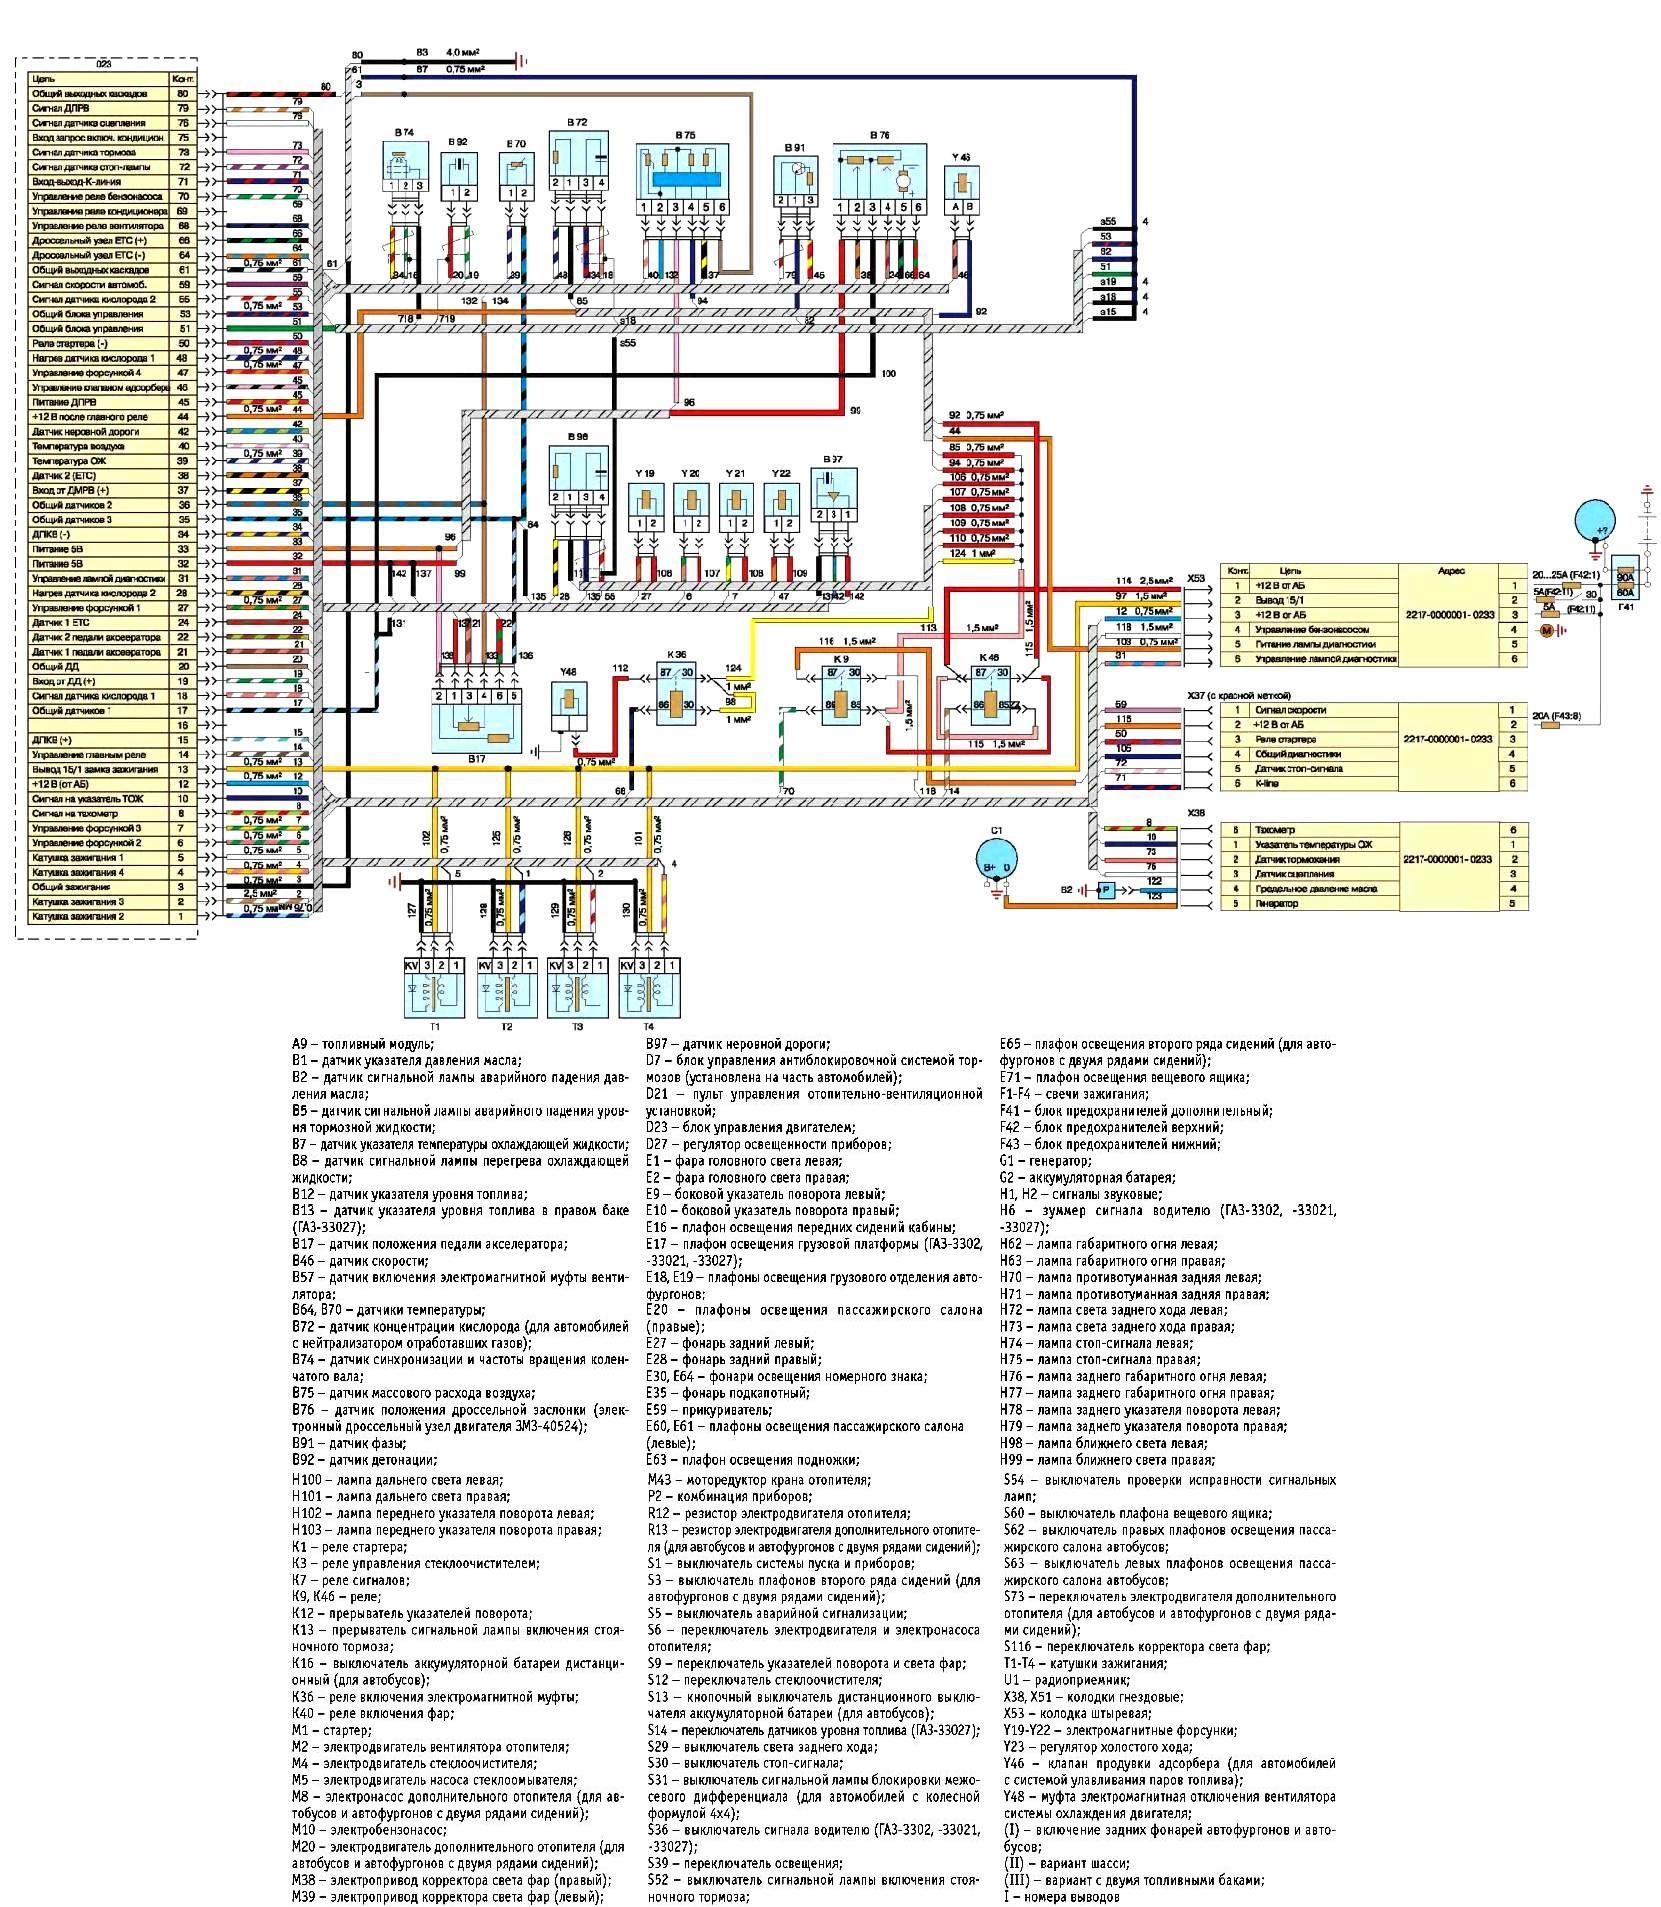 ZMZ-40524 қозғалтқышын басқару жүйесінің электр схемасы